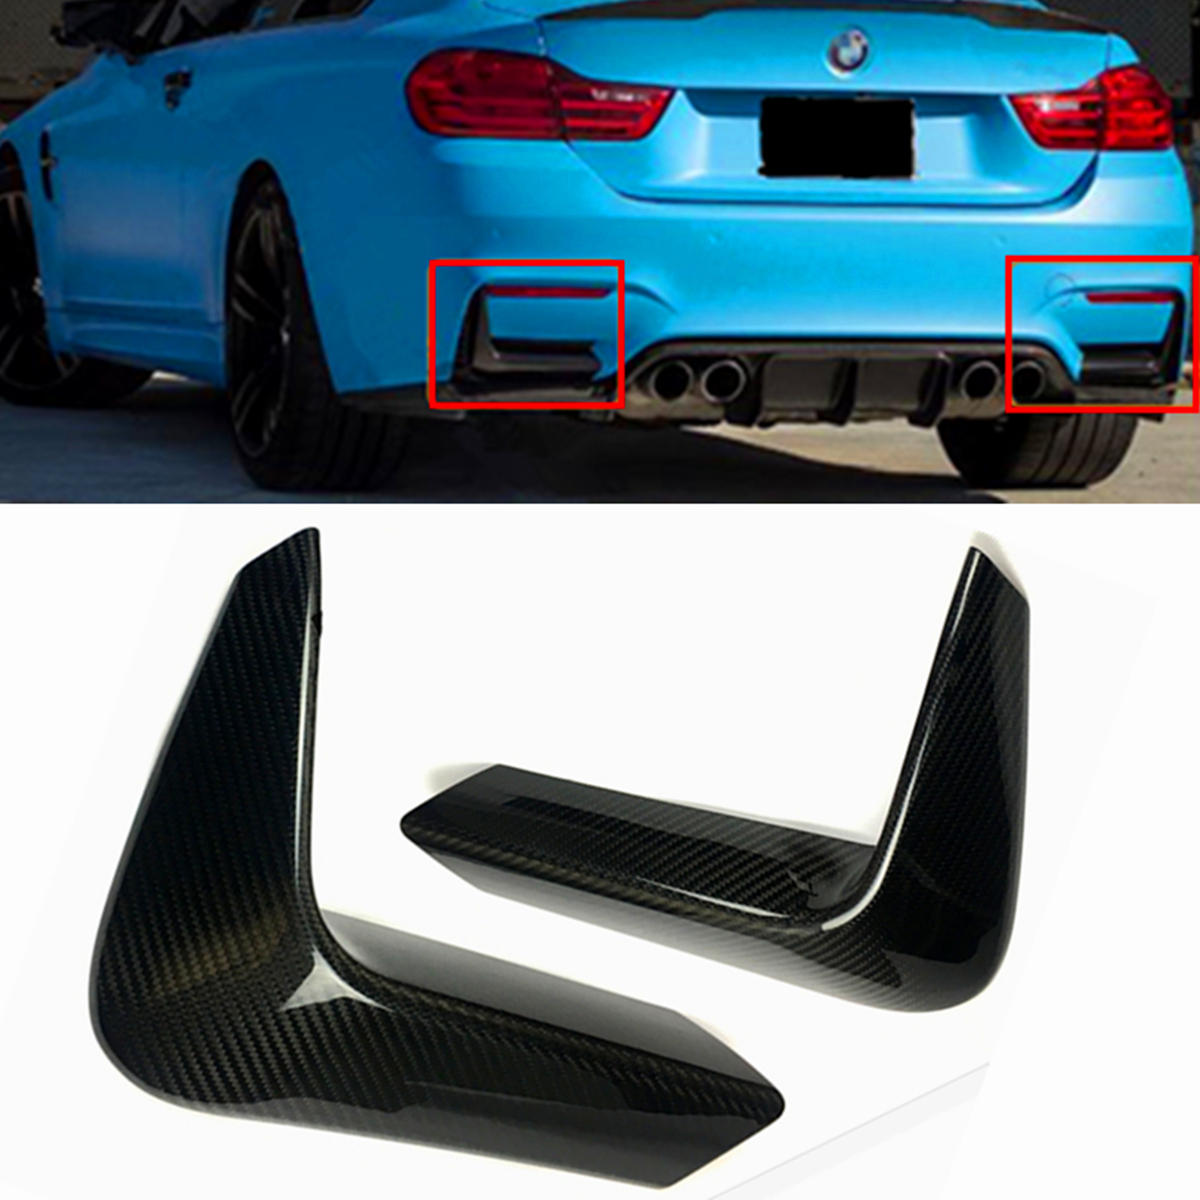 Koolstofvezel achterbumper hoek volant dekking voor BMW F80 M3 F82 F83 M4 2015-2018